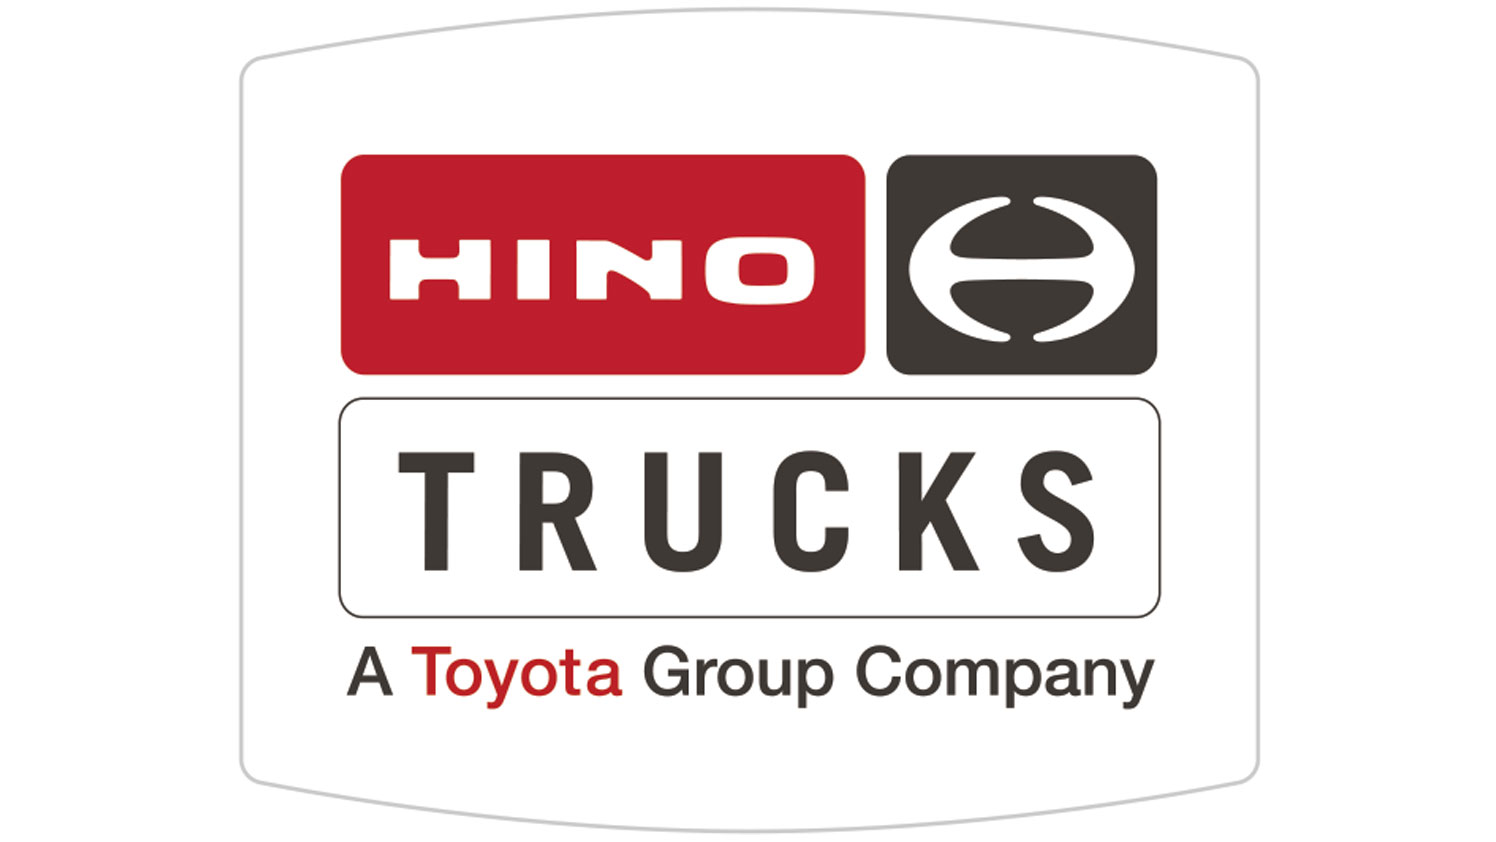 Hino Trucks - A Toyota Group Company